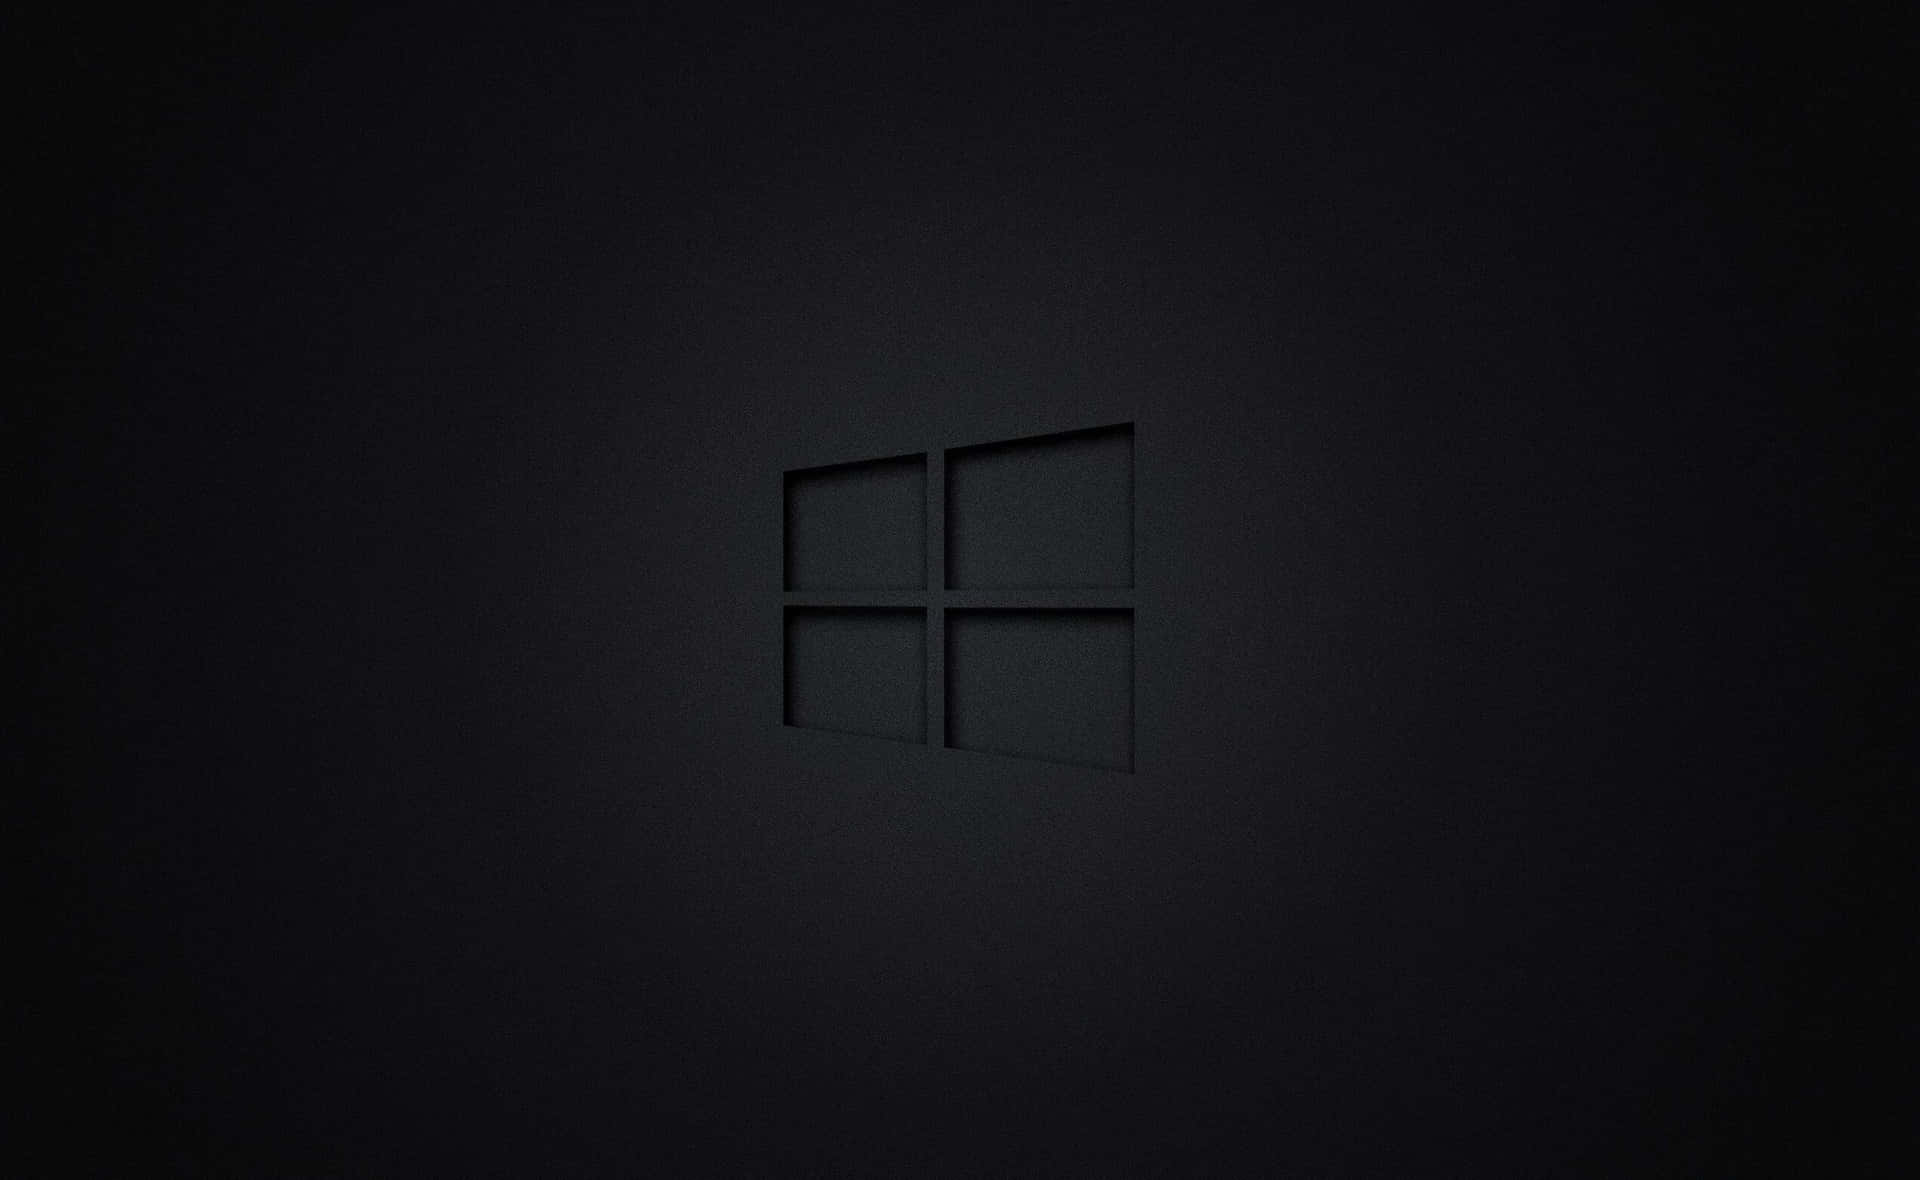 Windows 10 Desktop Background